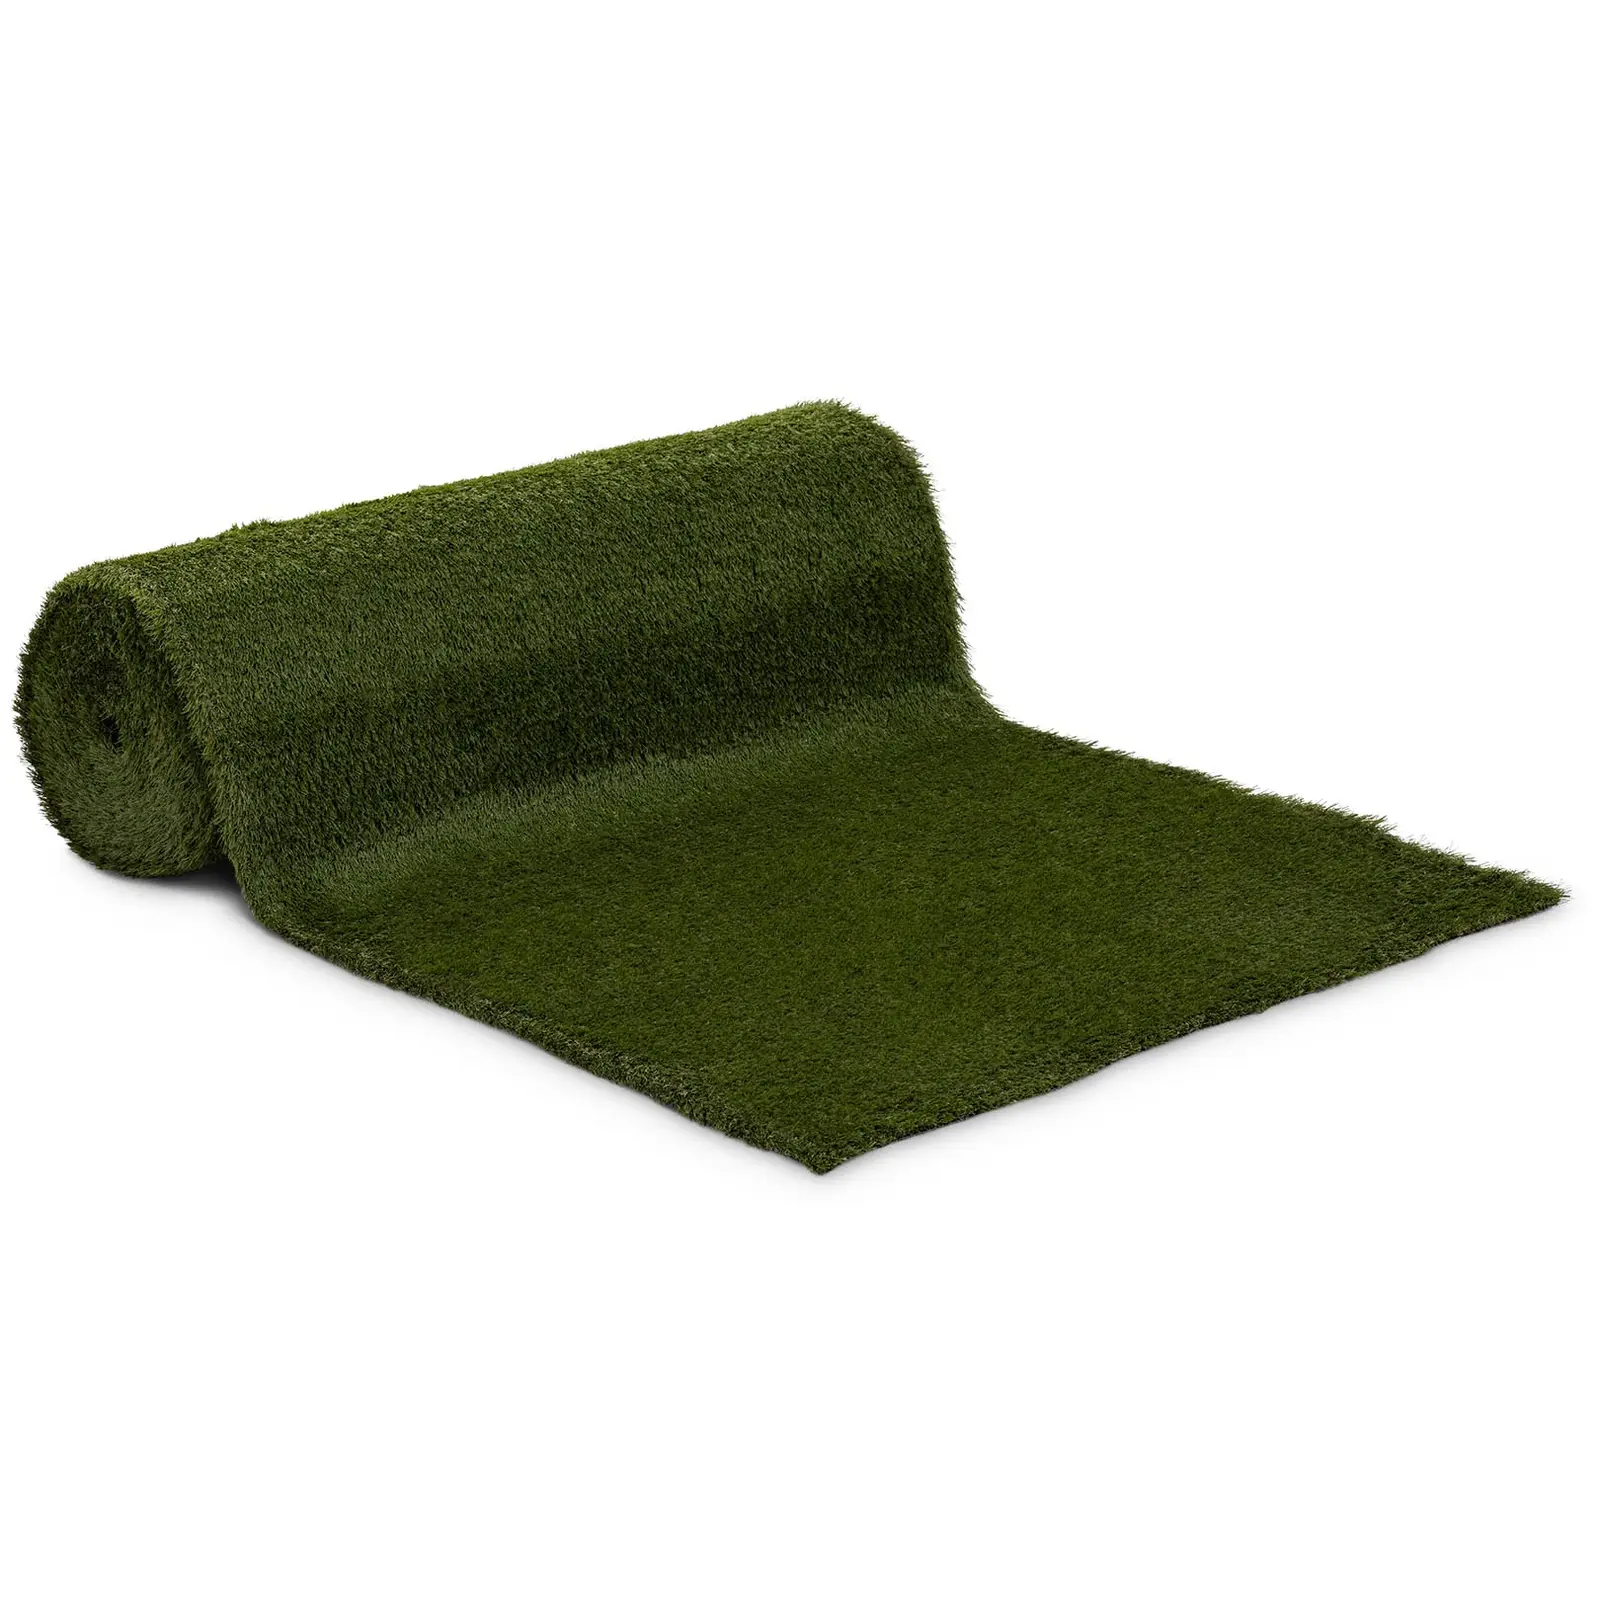 Umelý trávnik - 1008 x 100 cm - výška: 30 mm - hustota stehu: 20/10 cm - odolný proti UV žiareniu